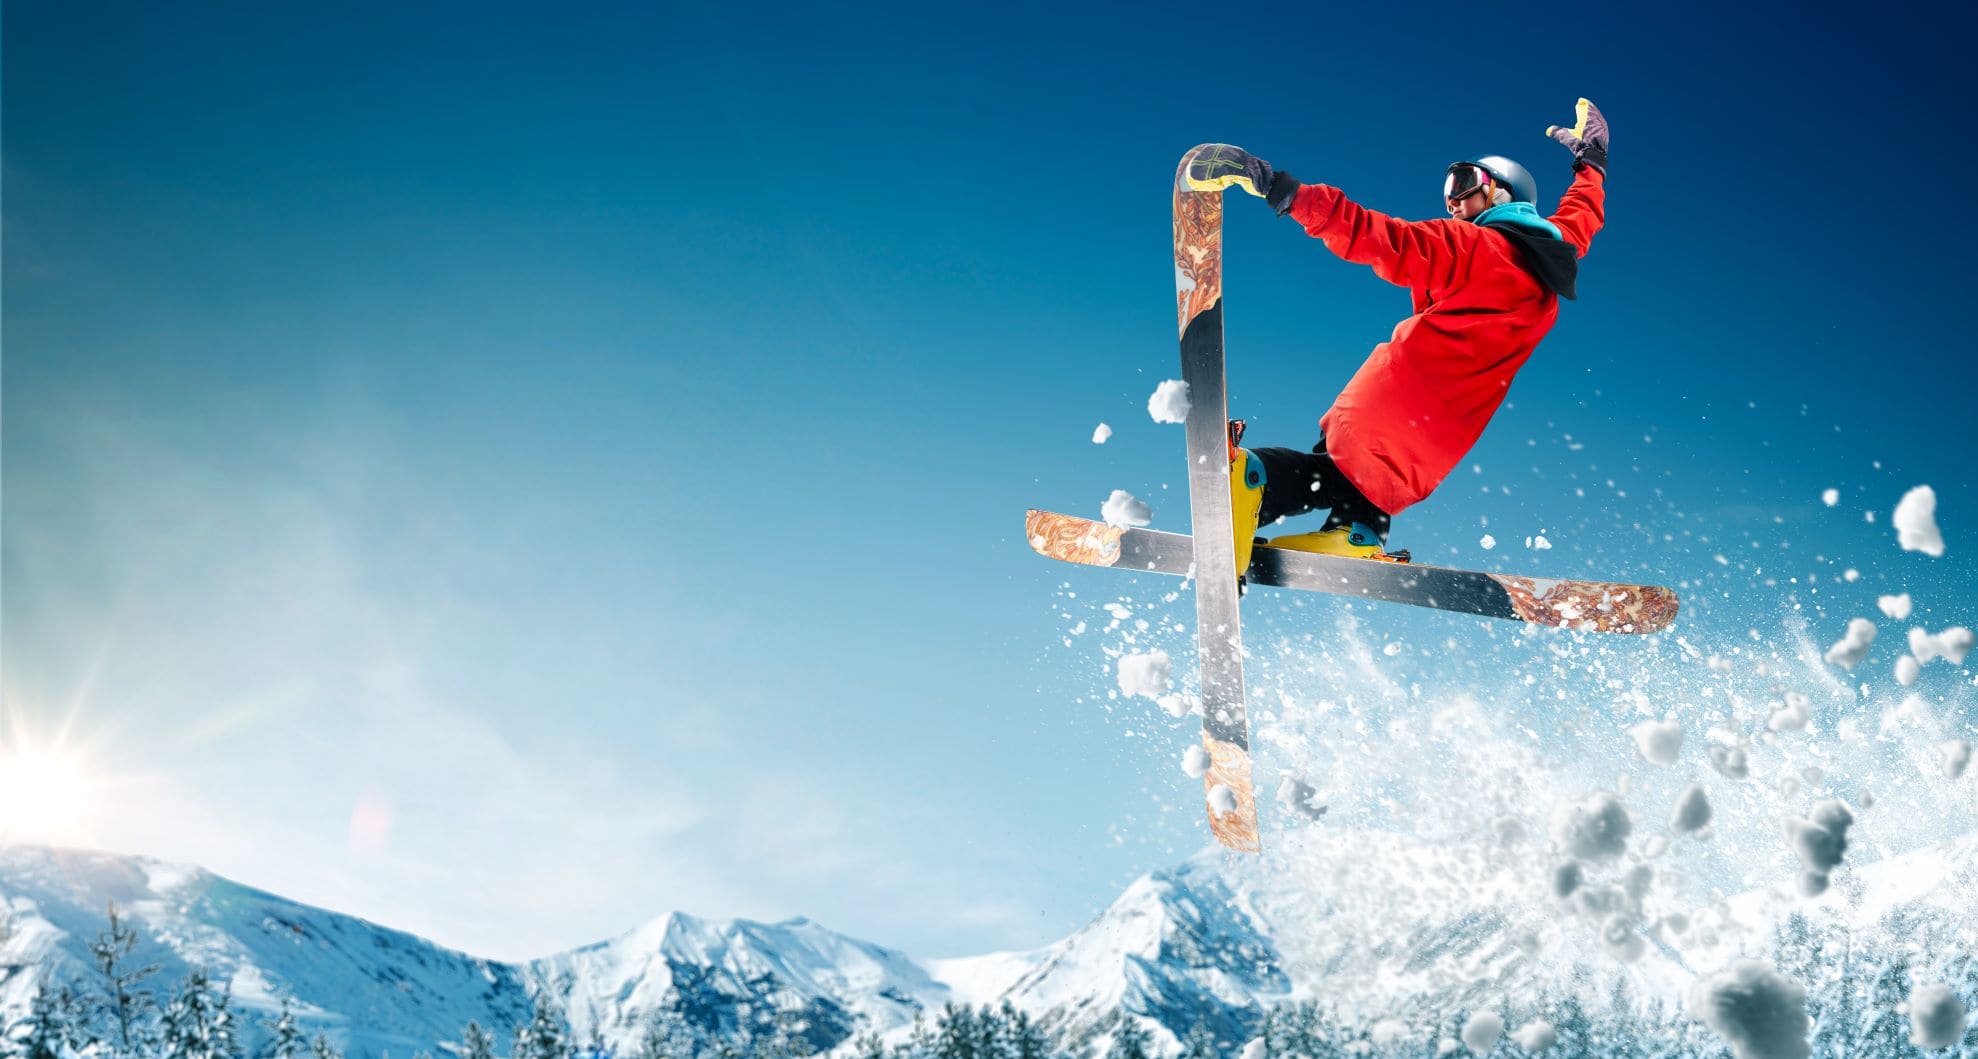 Ski-Freestyler in Aktion 